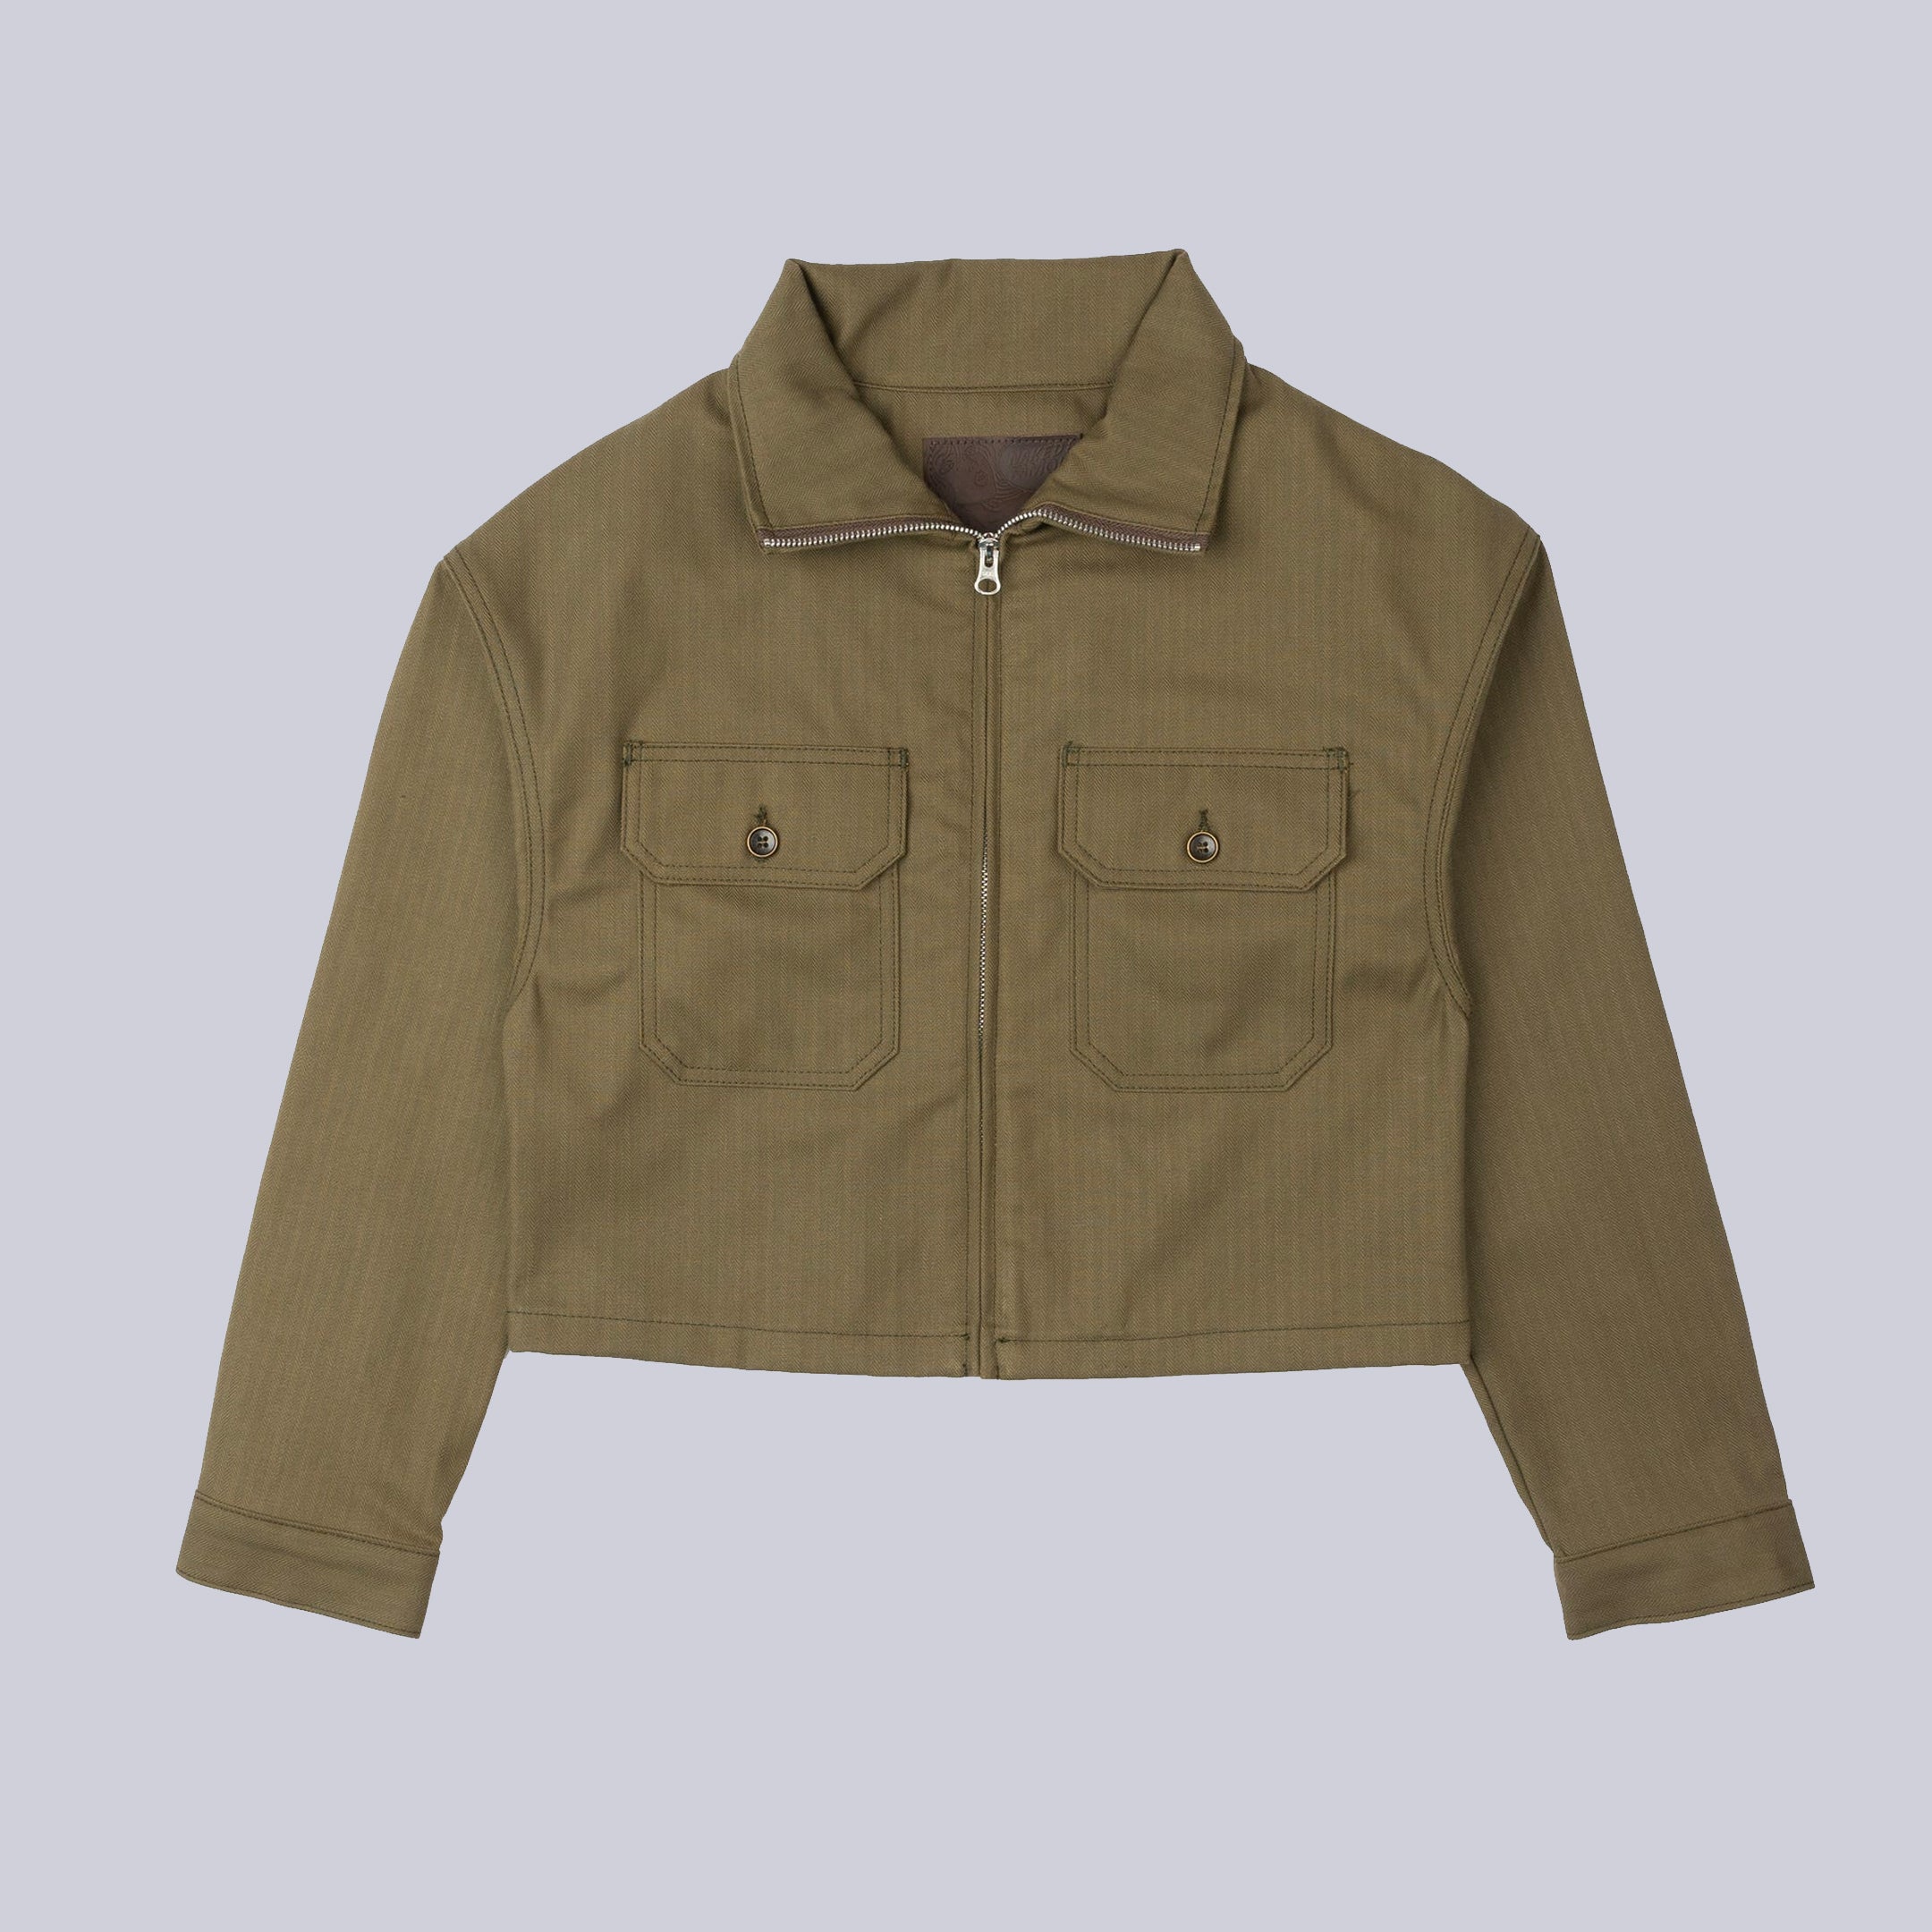 Zip Crop Jacket - Army HBT - Olive Drab